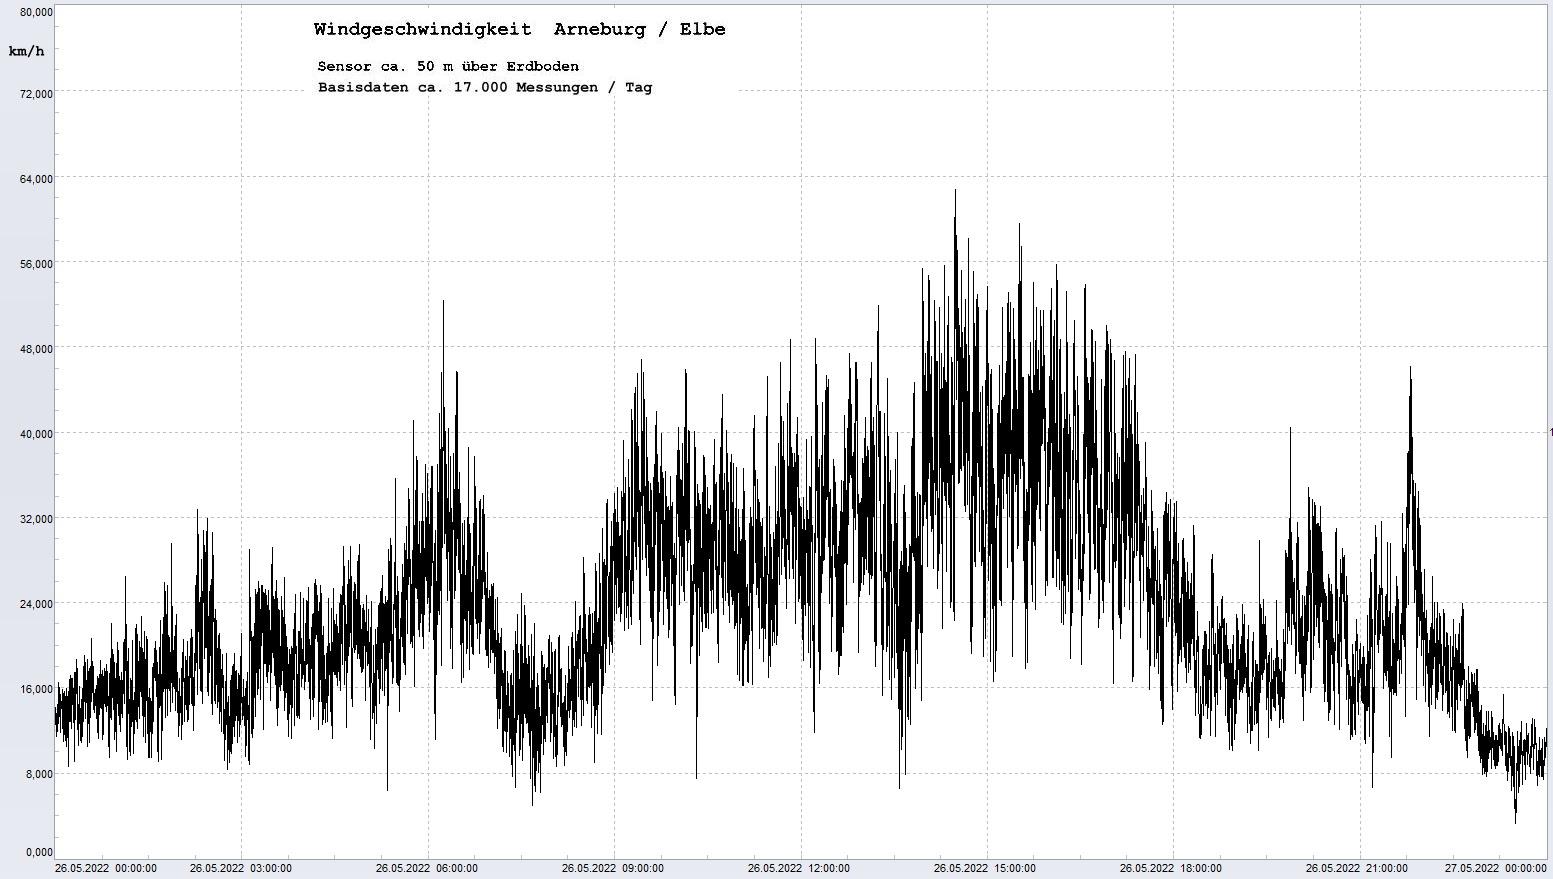 Arneburg Tages-Diagramm Winddaten, 26.05.2023
  Diagramm, Sensor auf Gebude, ca. 50 m ber Erdboden, Basis: 5s-Aufzeichnung